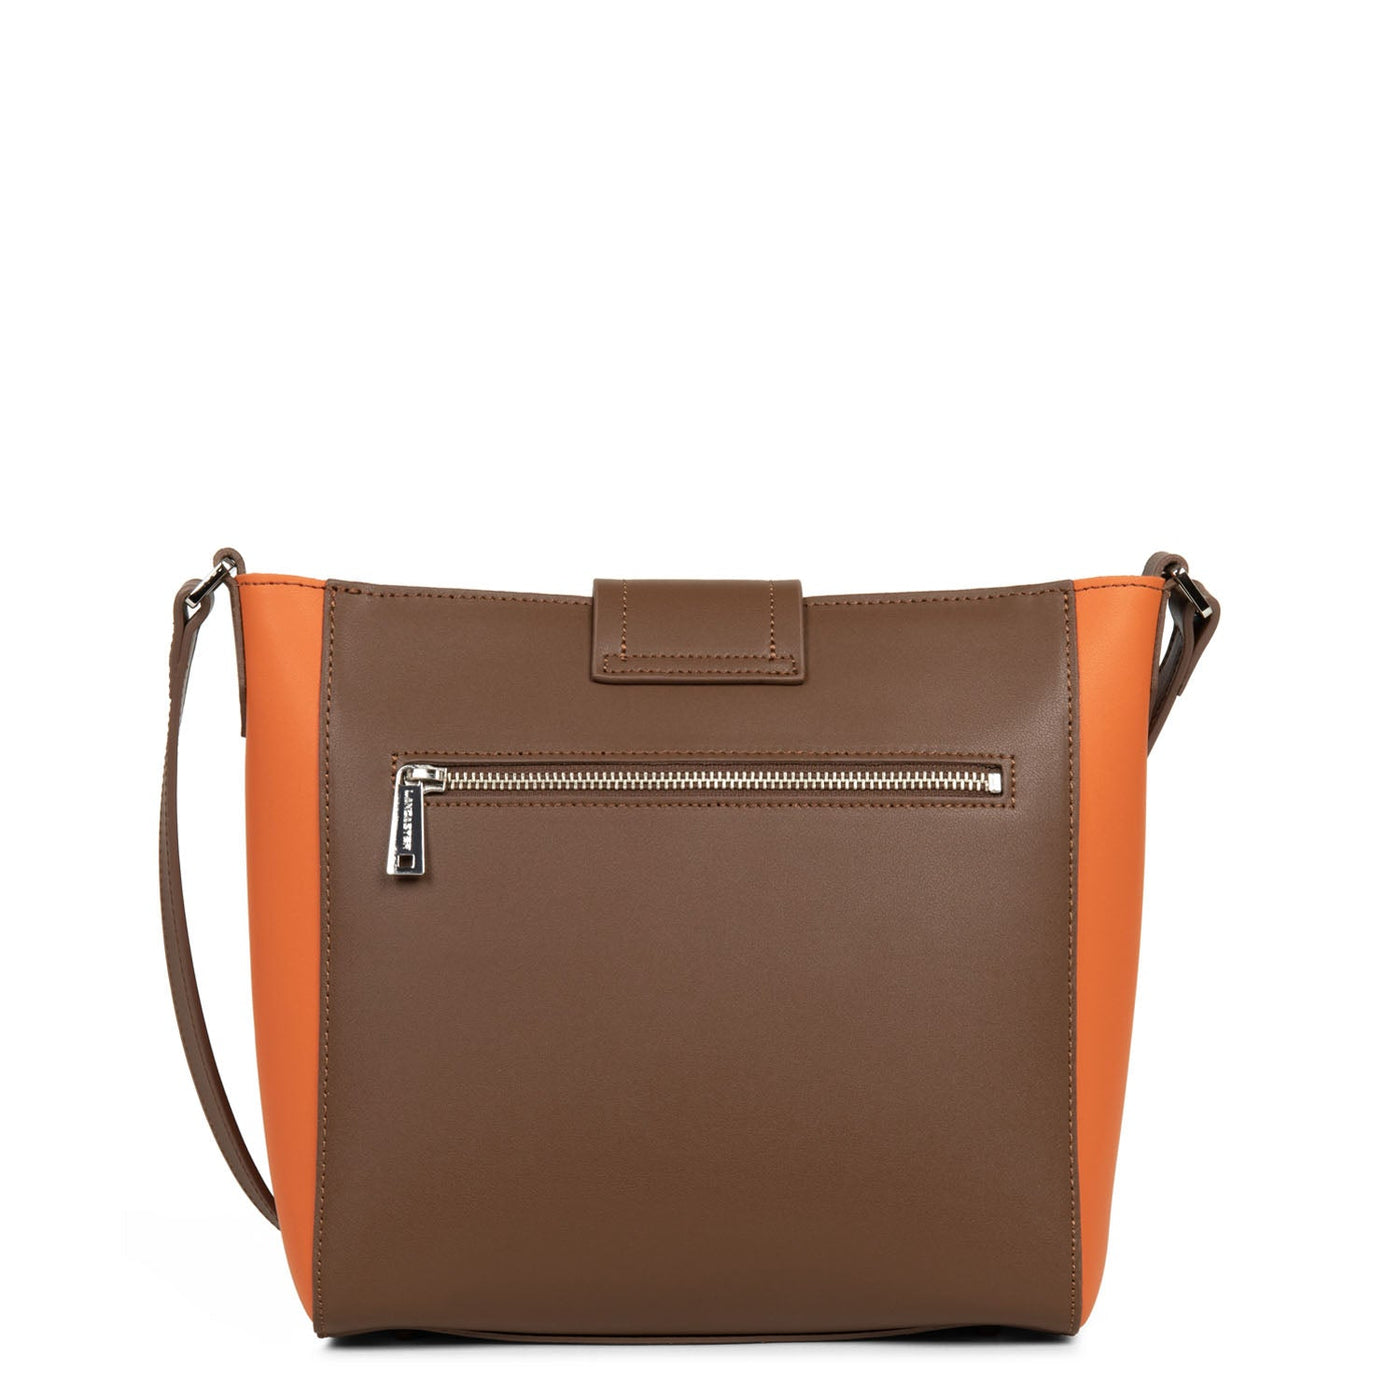 shoulder bag - city maé #couleur_vison-orange